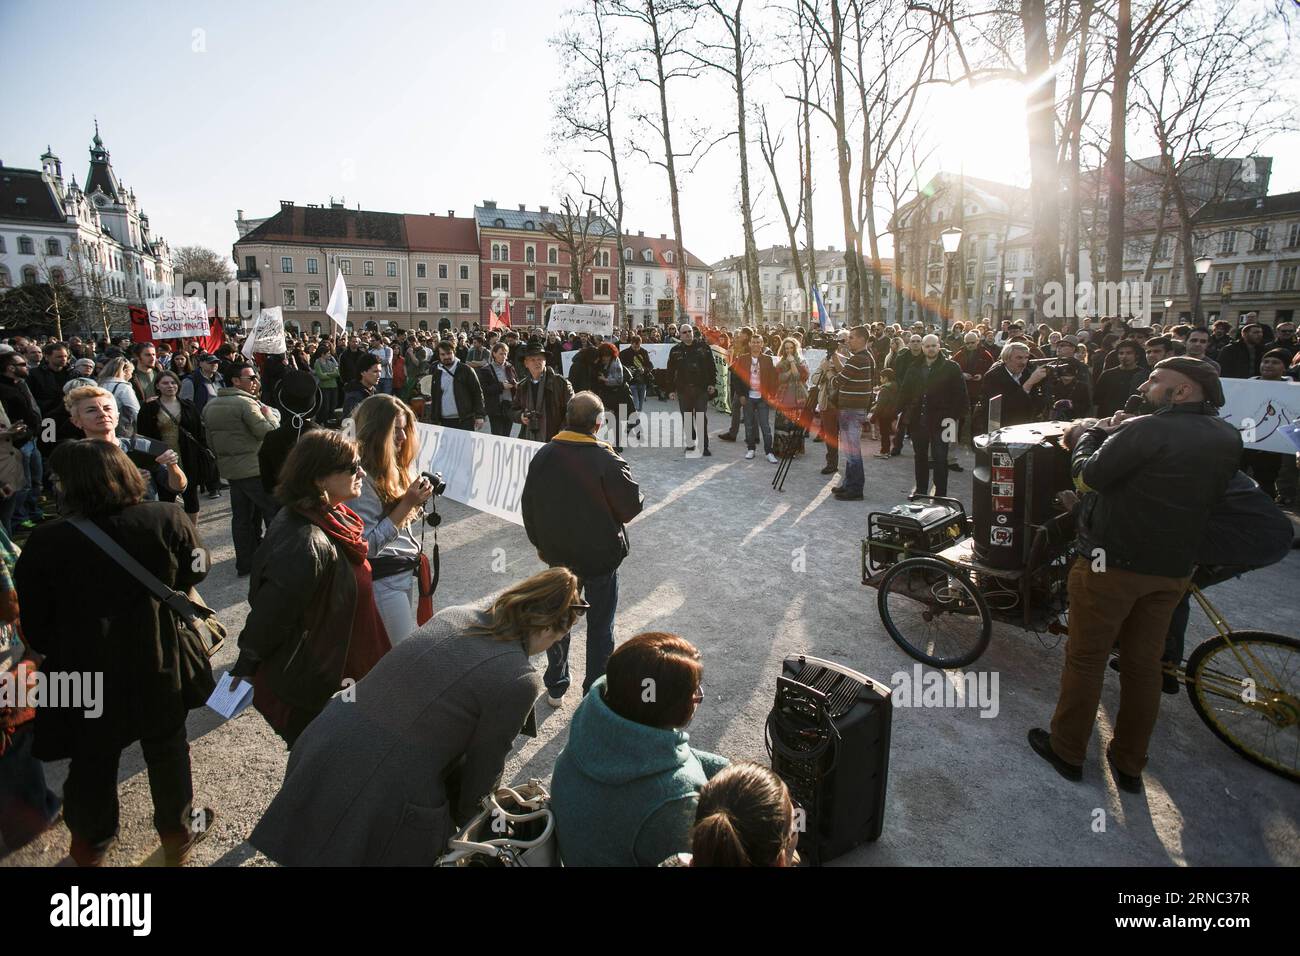 (160320) -- LUBIANA, 20 marzo 2016 -- i manifestanti ascoltano discorsi nel Parco Zvezda durante una protesta contro il razzismo e il fascismo a Lubiana, Slovenia, 19 marzo 2016. Centinaia di persone si sono riunite sabato in piazza del Congresso in una protesta contro il fascismo e il razzismo, invitando il governo a cambiare la sua politica in materia di rifugiati e ad aprire i confini della Slovenia. SLOVENIA-LUBIANA-RALLY LukaxDakskobler PUBLICATIONxNOTxINxCHN Lubiana 20 marzo 2016 manifestanti elenca i discorsi nel Parco Zvezda durante una protesta contro il razzismo e il fascismo a Lubiana Slovenia 19 marzo 2016 centinaia di celebriti Foto Stock